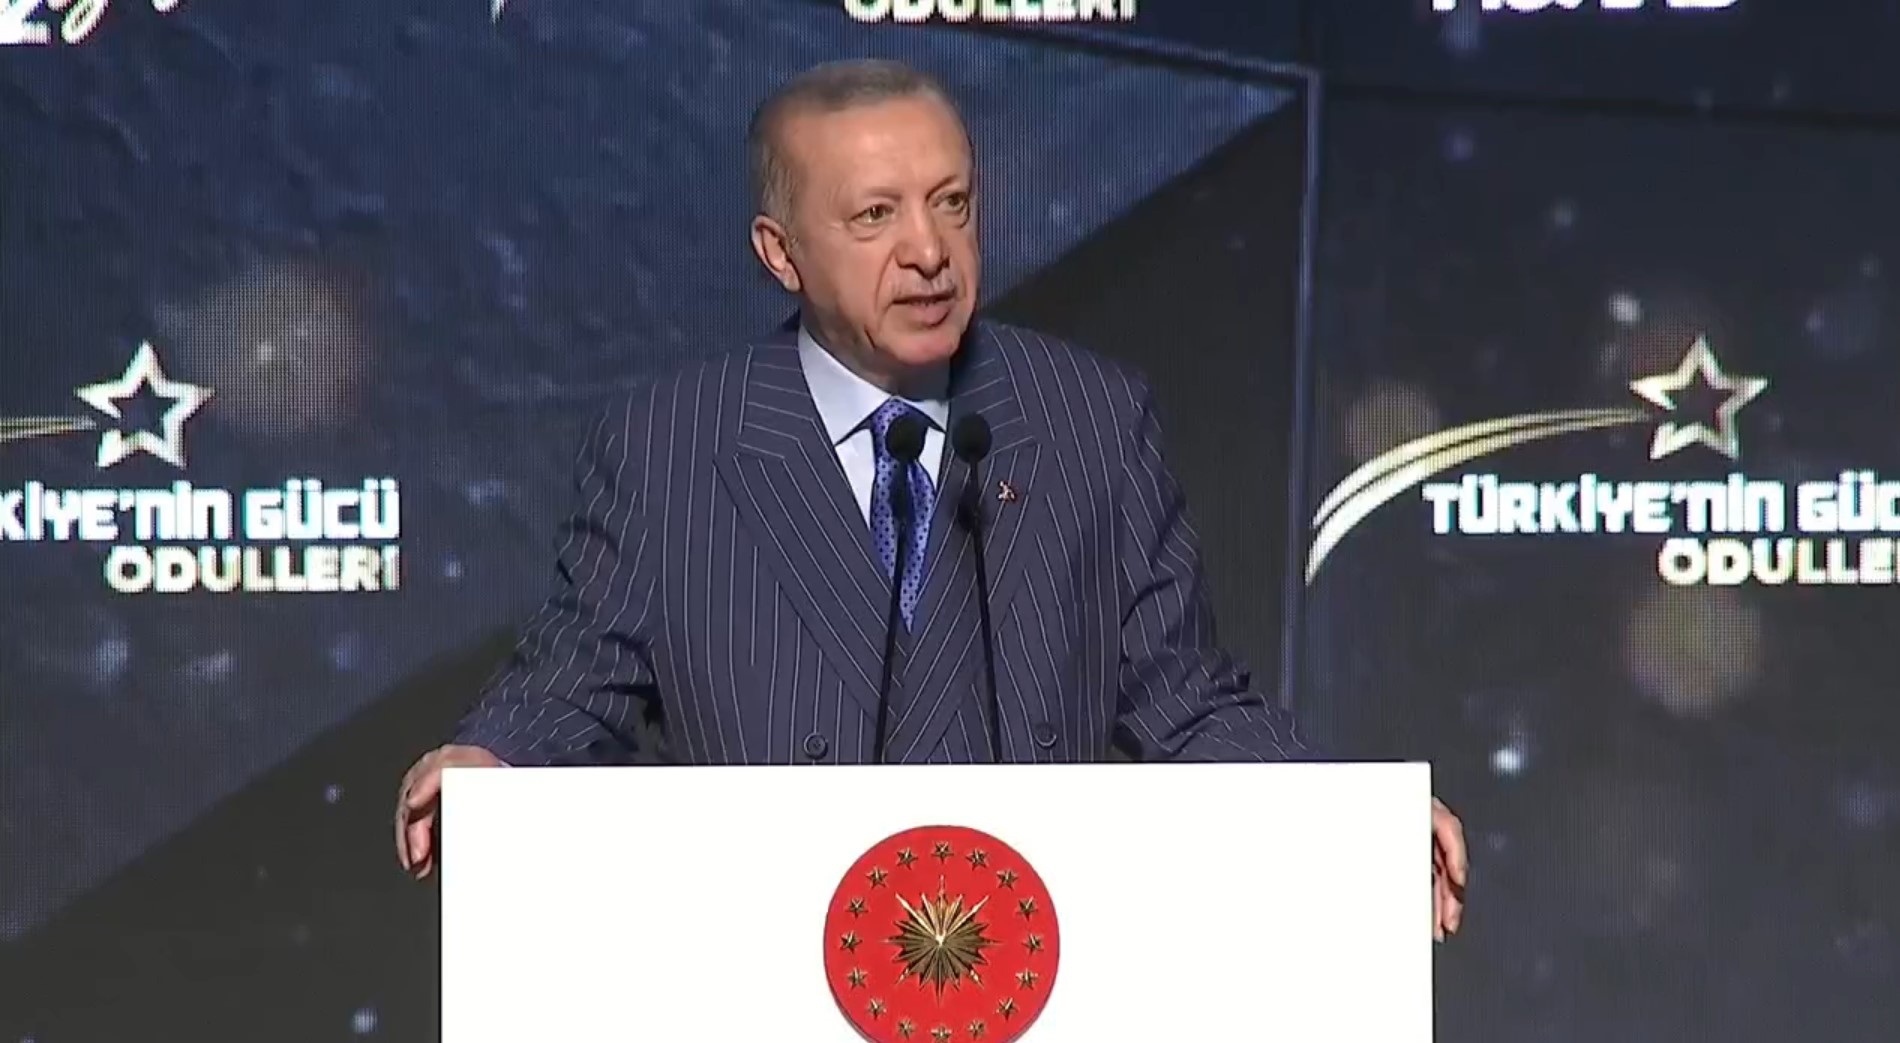 Cumhurbaşkanı Erdoğan, Suriyeliler için konuştu: Kendileri isterlerse gidebilirler ama biz onlara ev sahipliği yapmaya devam edeceğiz